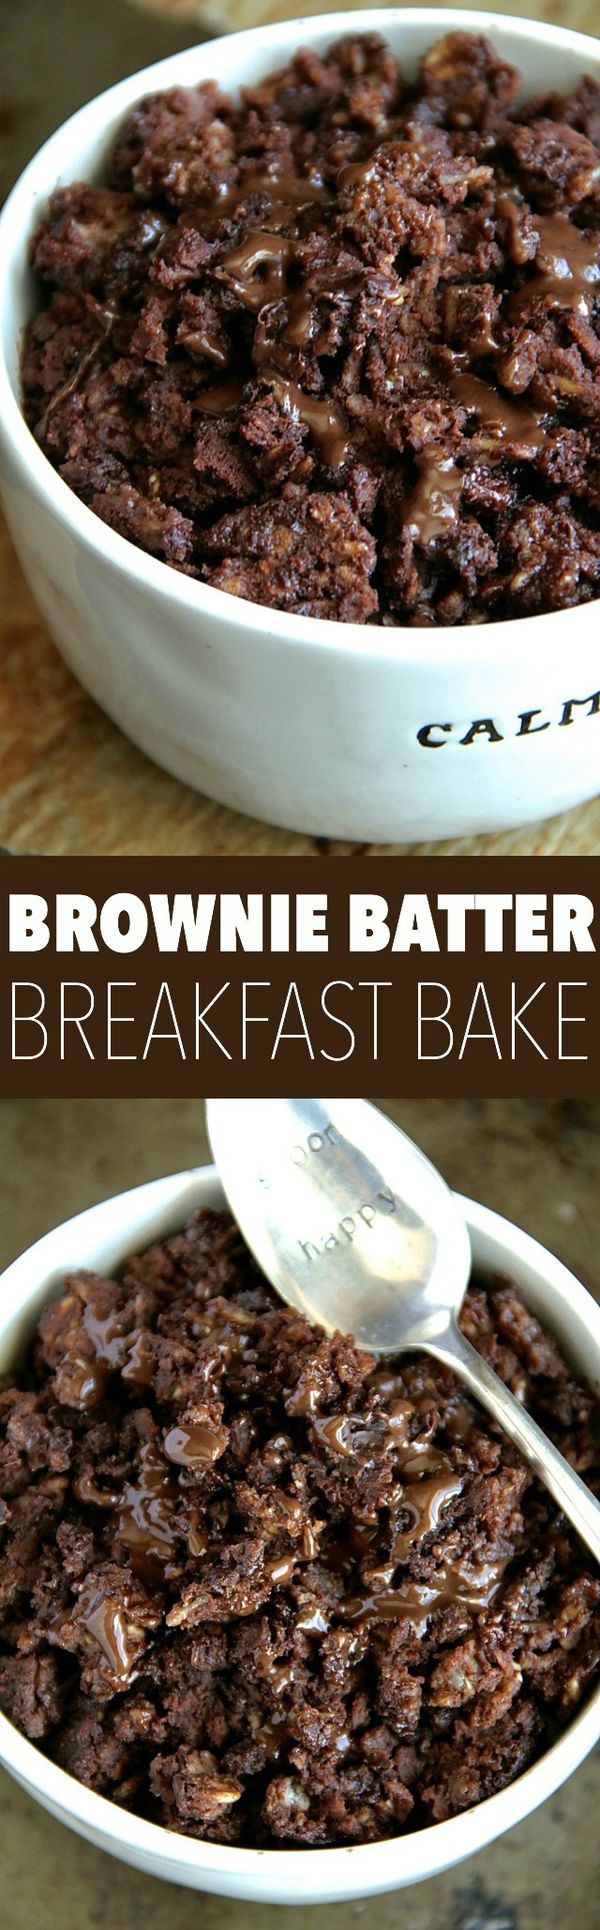 Brownie Batter Breakfast Bake